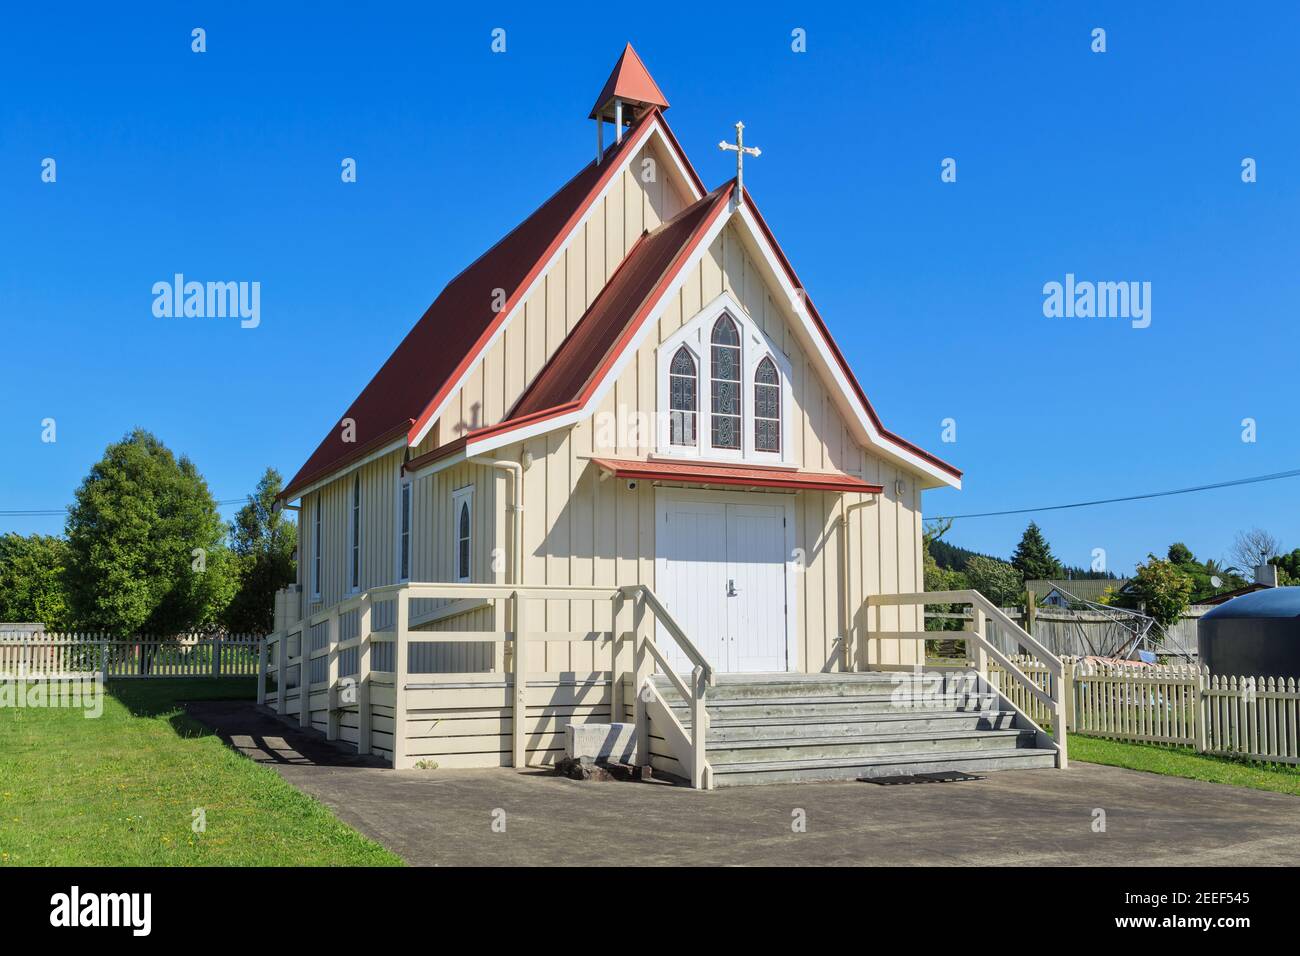 Chiesa Anglicana di Santa Maria, un'antica chiesa in legno dal semplice design 'carpentiere gotico' a Mourea, Nuova Zelanda Foto Stock